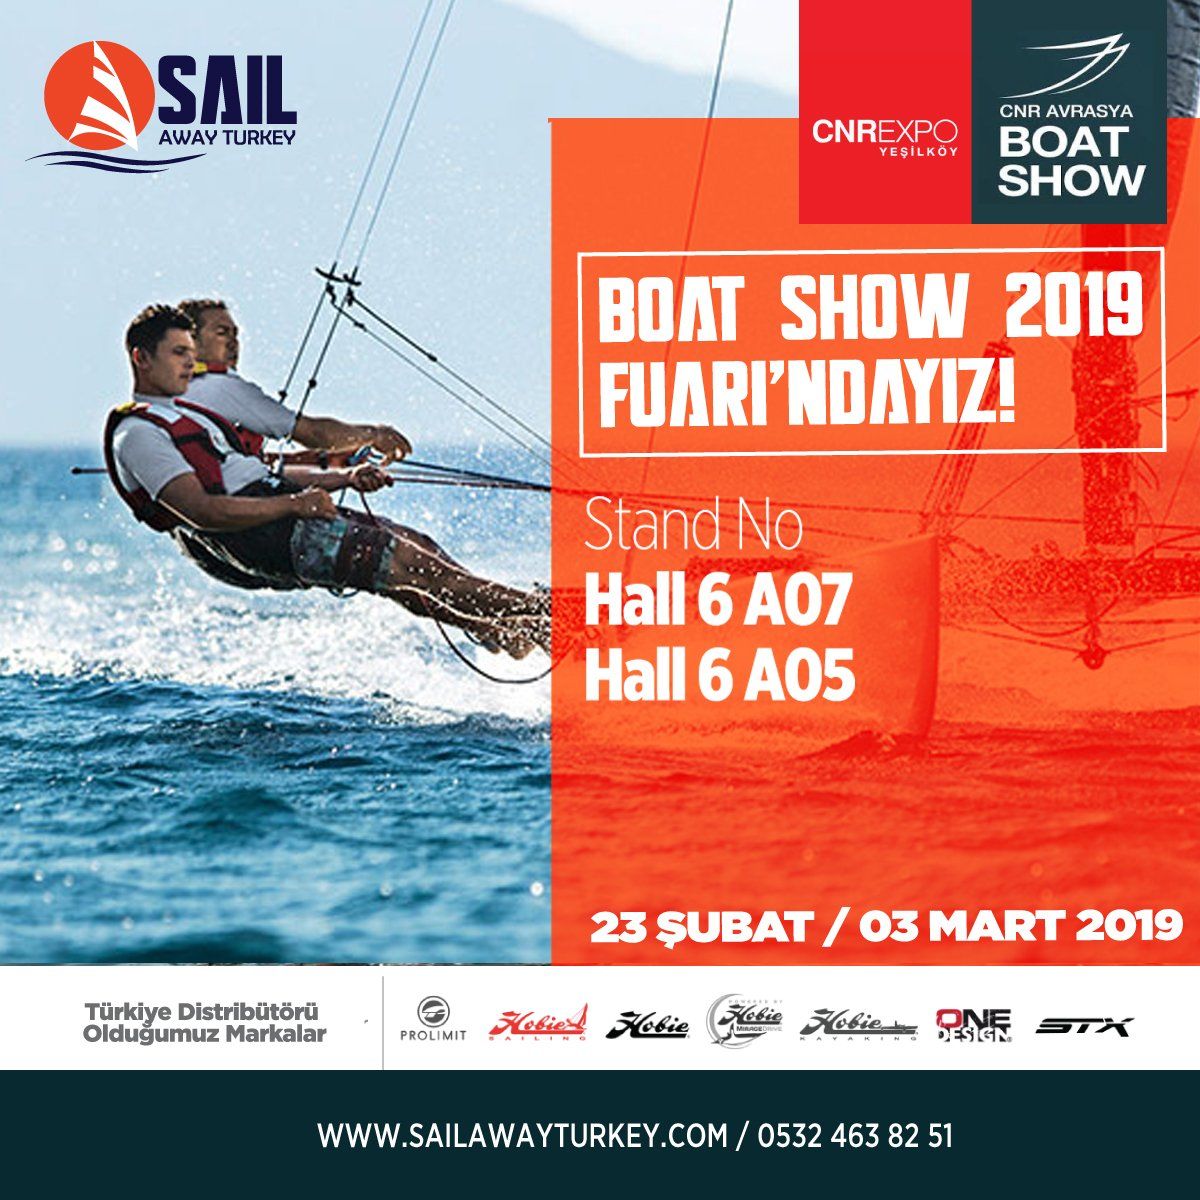 Cnr Avraya Boat Show 23.02.2019 - 03.03.2019 tarihleri arasında sizlerleyiz